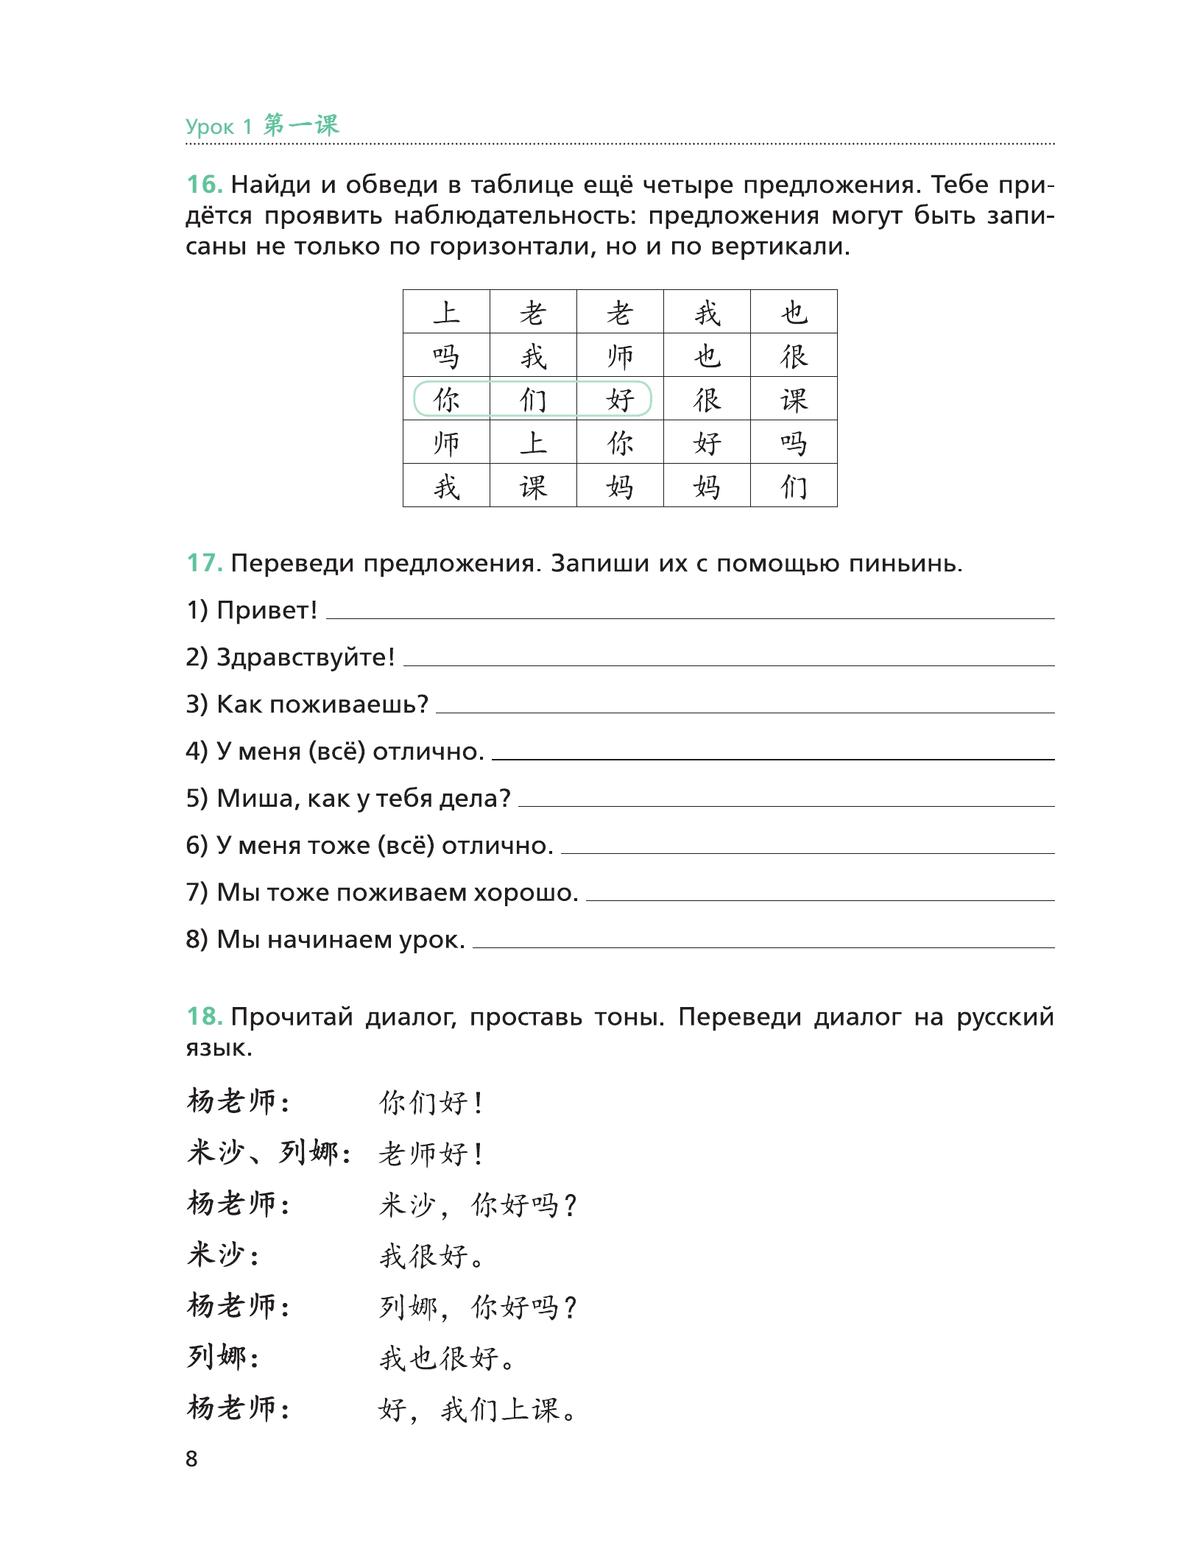 Китайский язык. Второй иностранный язык. Рабочая тетрадь. 5 класс 7